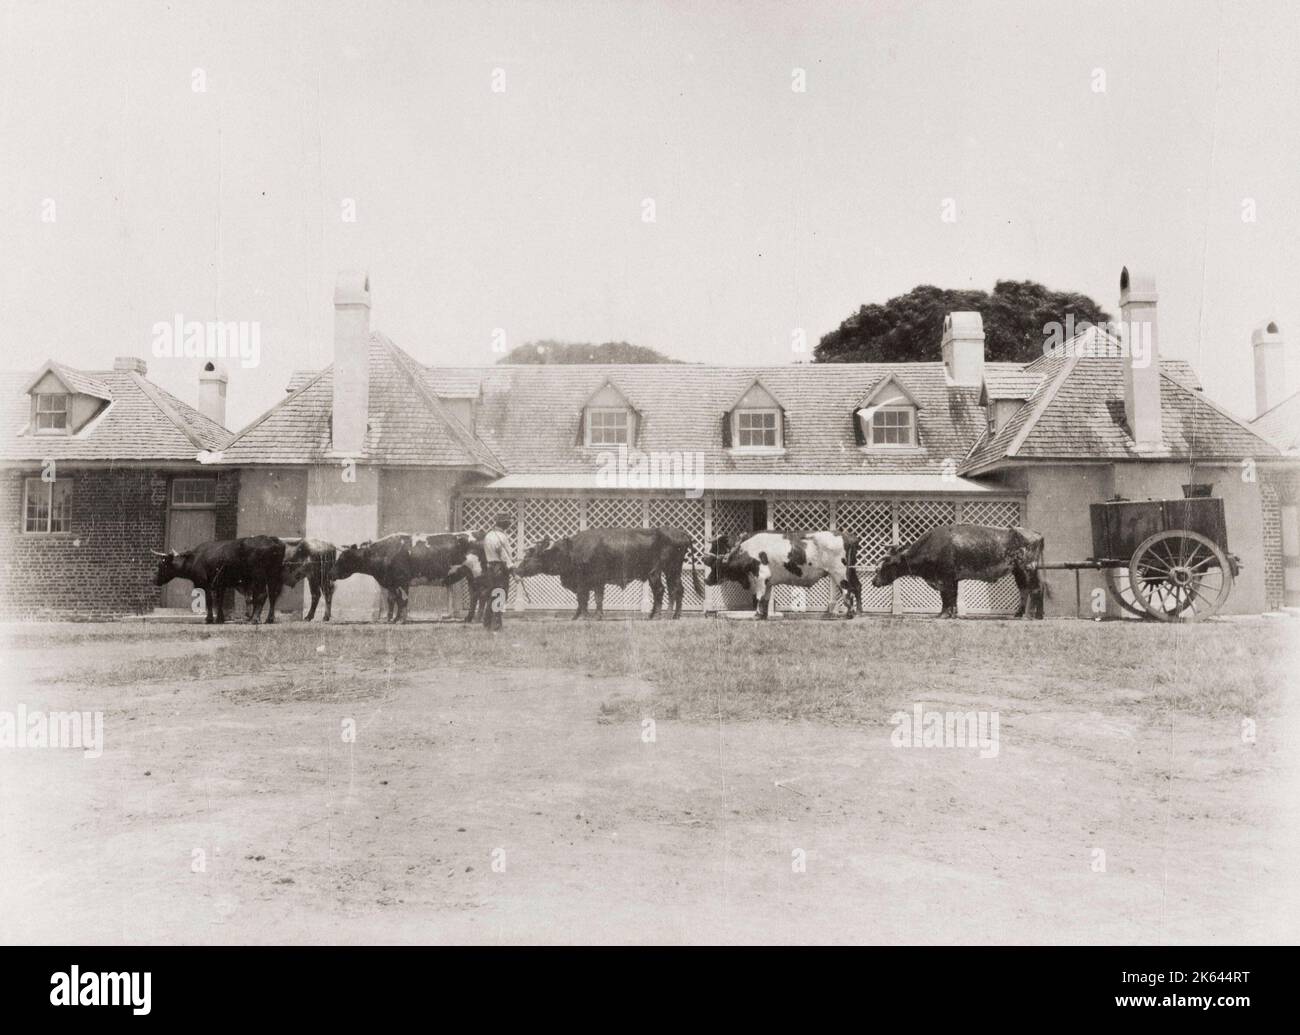 Vintage 19. Jahrhundert Foto: Farm Szene - Rinder und Wagen Coolangatta. Coolangatta ist ein historisches Gebiet in Australien, am Nordufer des Shoalhaven River an der Südküste von New South Wales. Stockfoto